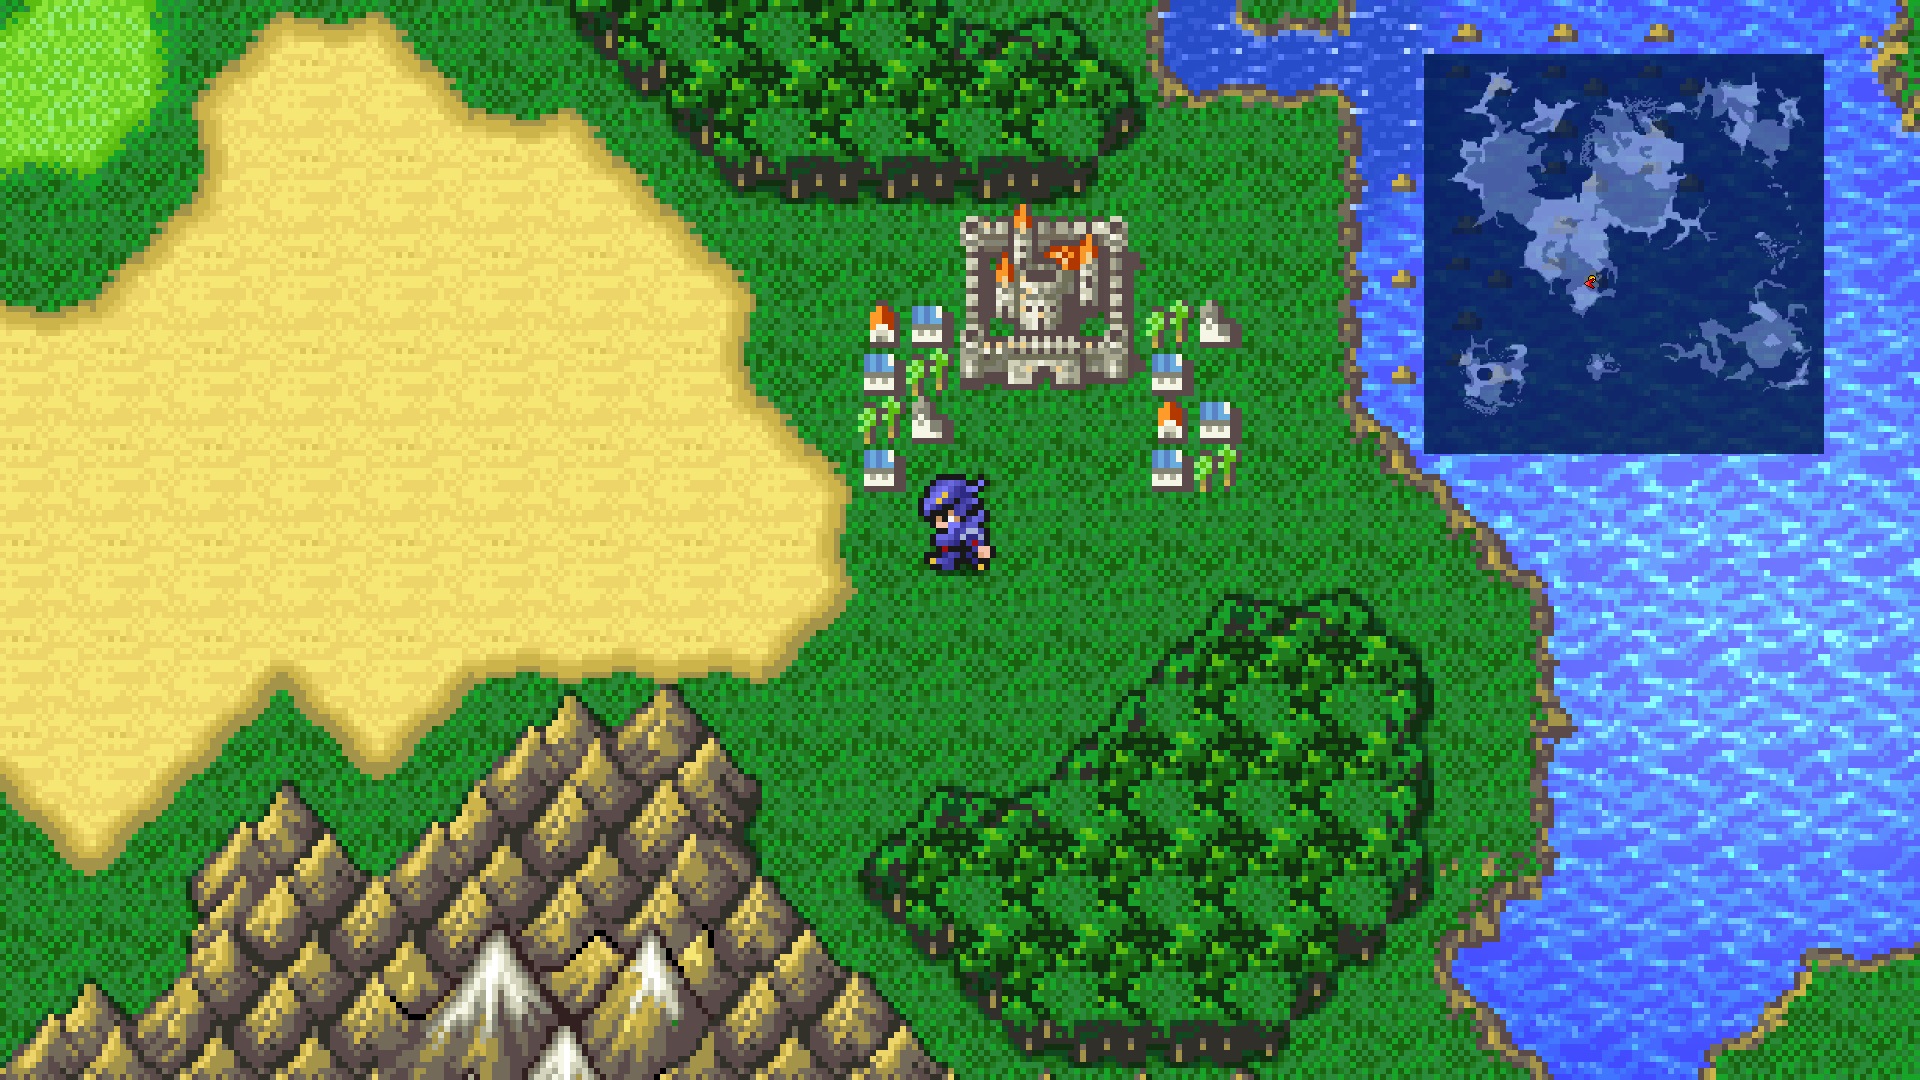 Tangkapan layar gameplay yang menampilkan Dark Knight Cecil dari Final Fantasy 4 di peta dunia dekat kota